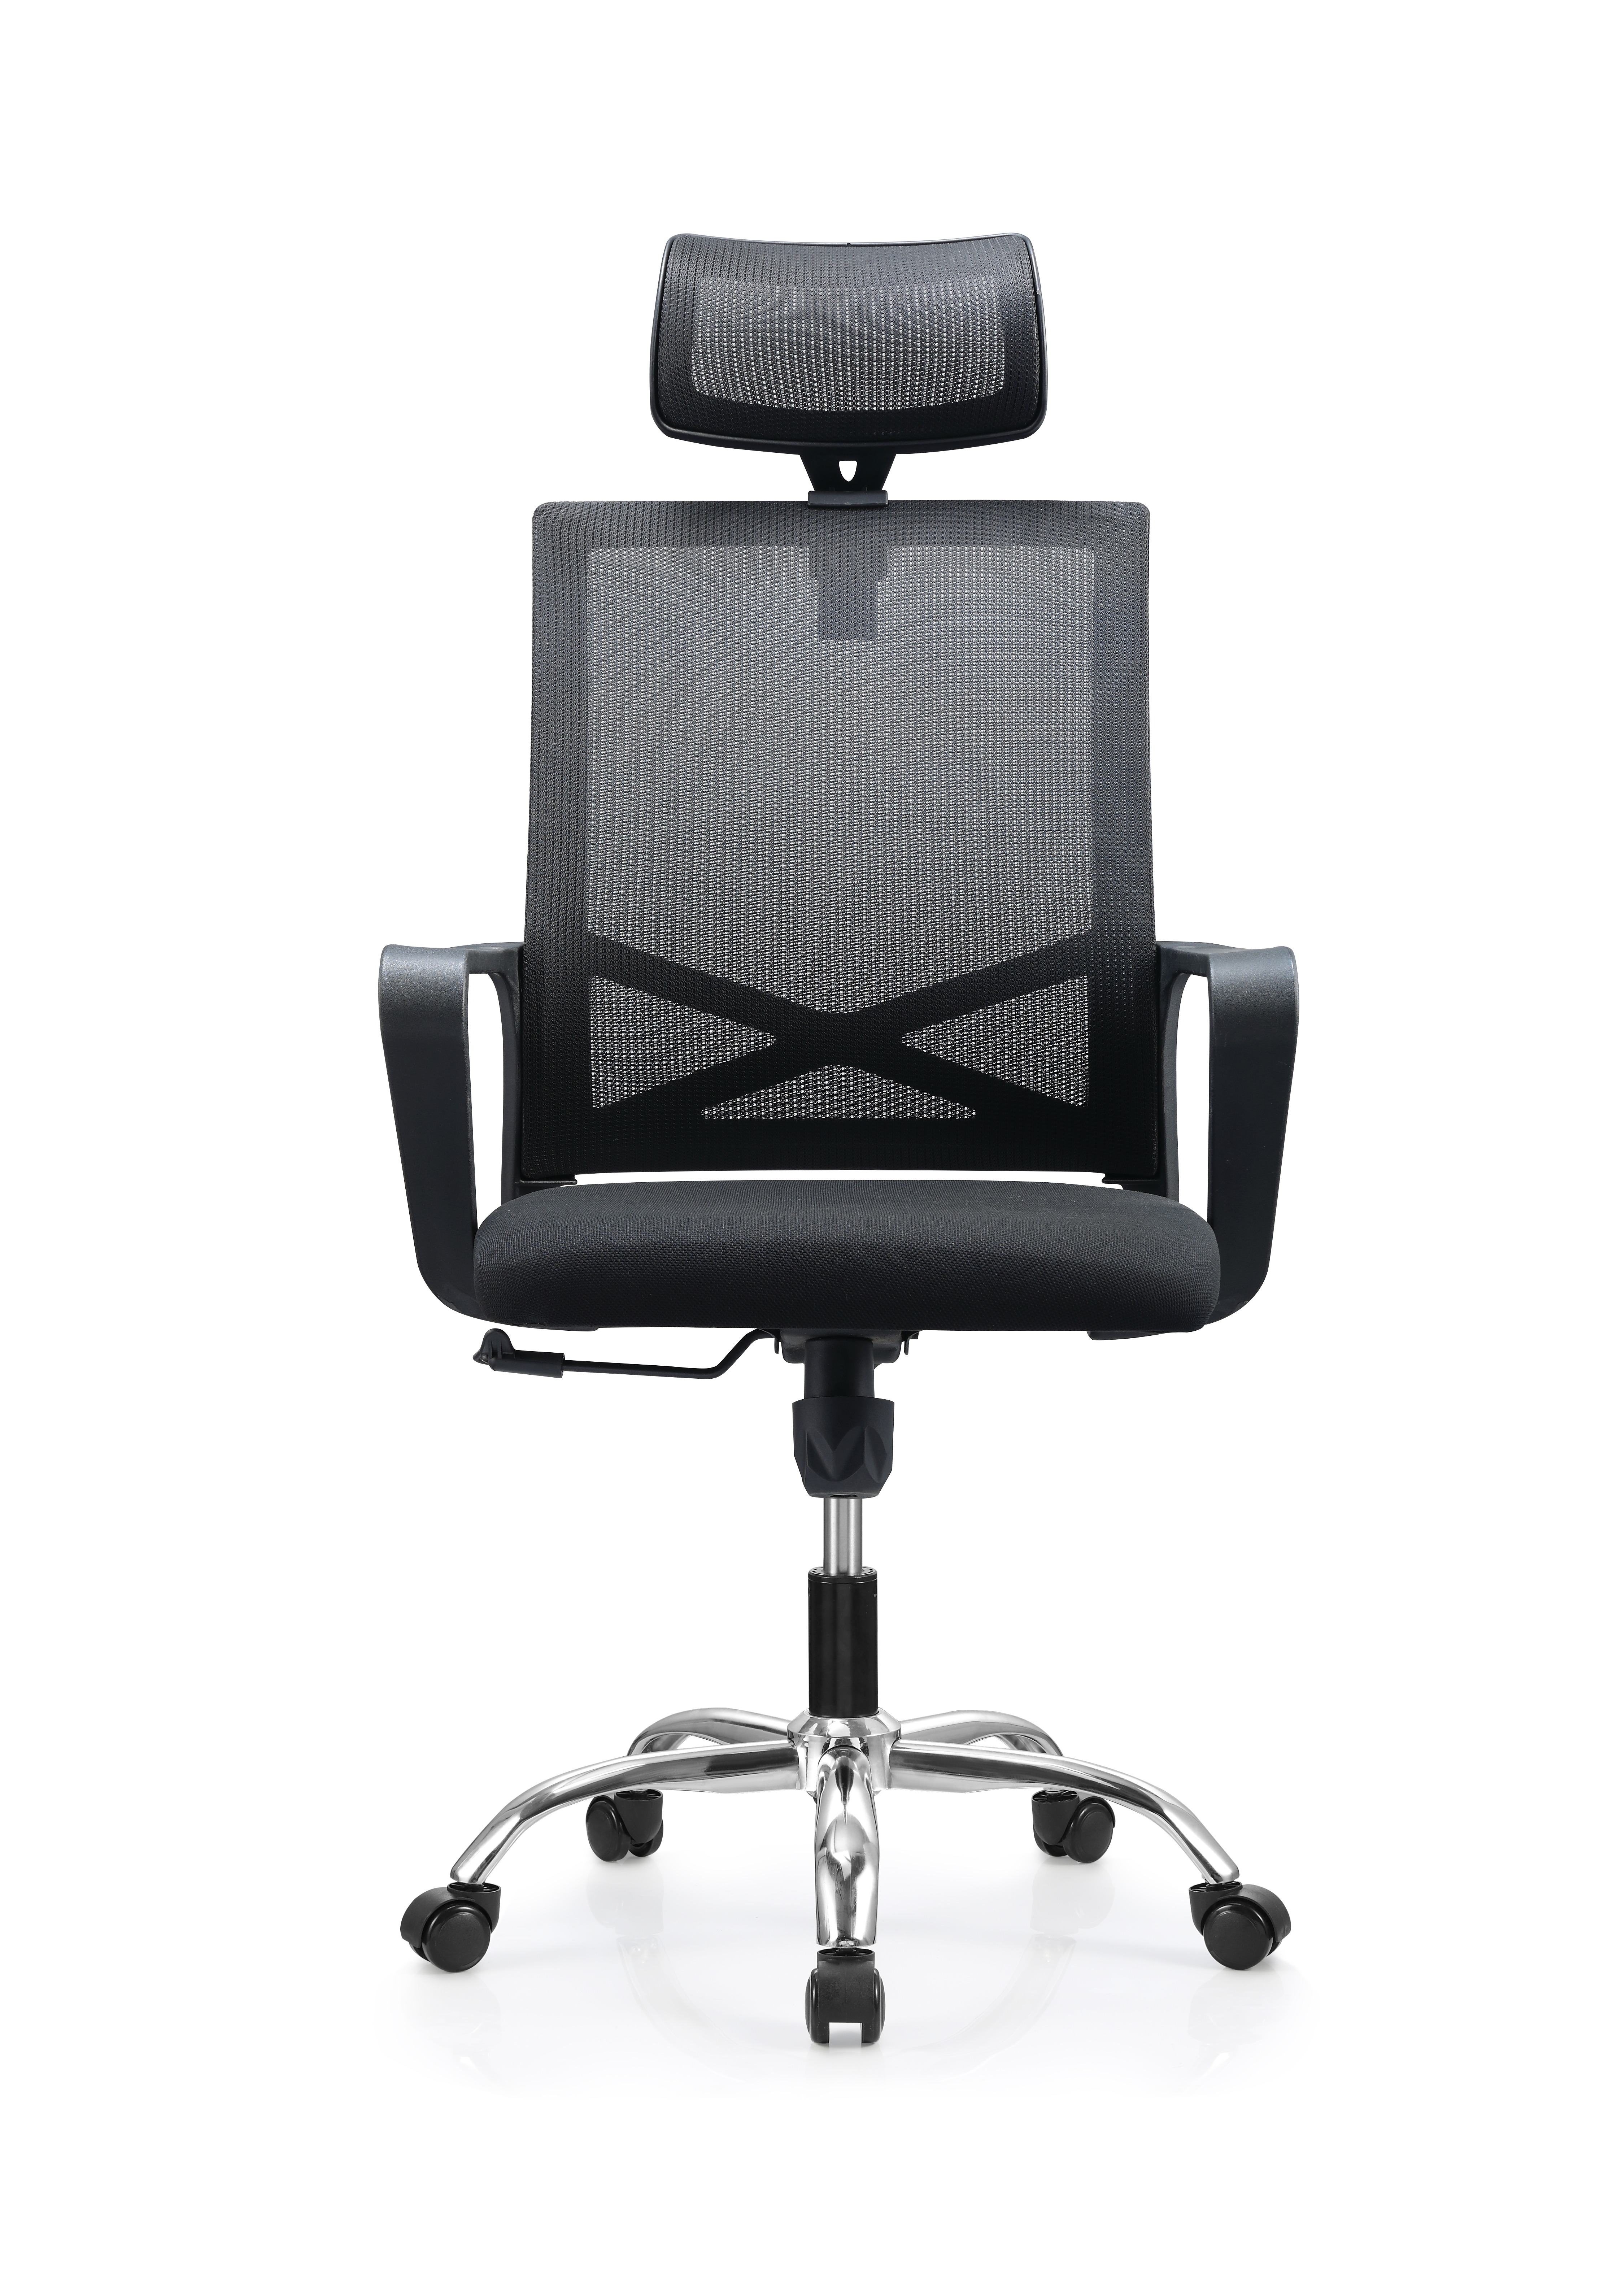 Newcity 552A Móveis de design moderno Personalizado Cadeira de malha com encosto alto Encosto de cabeça ajustável Cadeira de escritório de malha executiva Bom preço Fornecedor de cadeira de malha moderna Foshan China